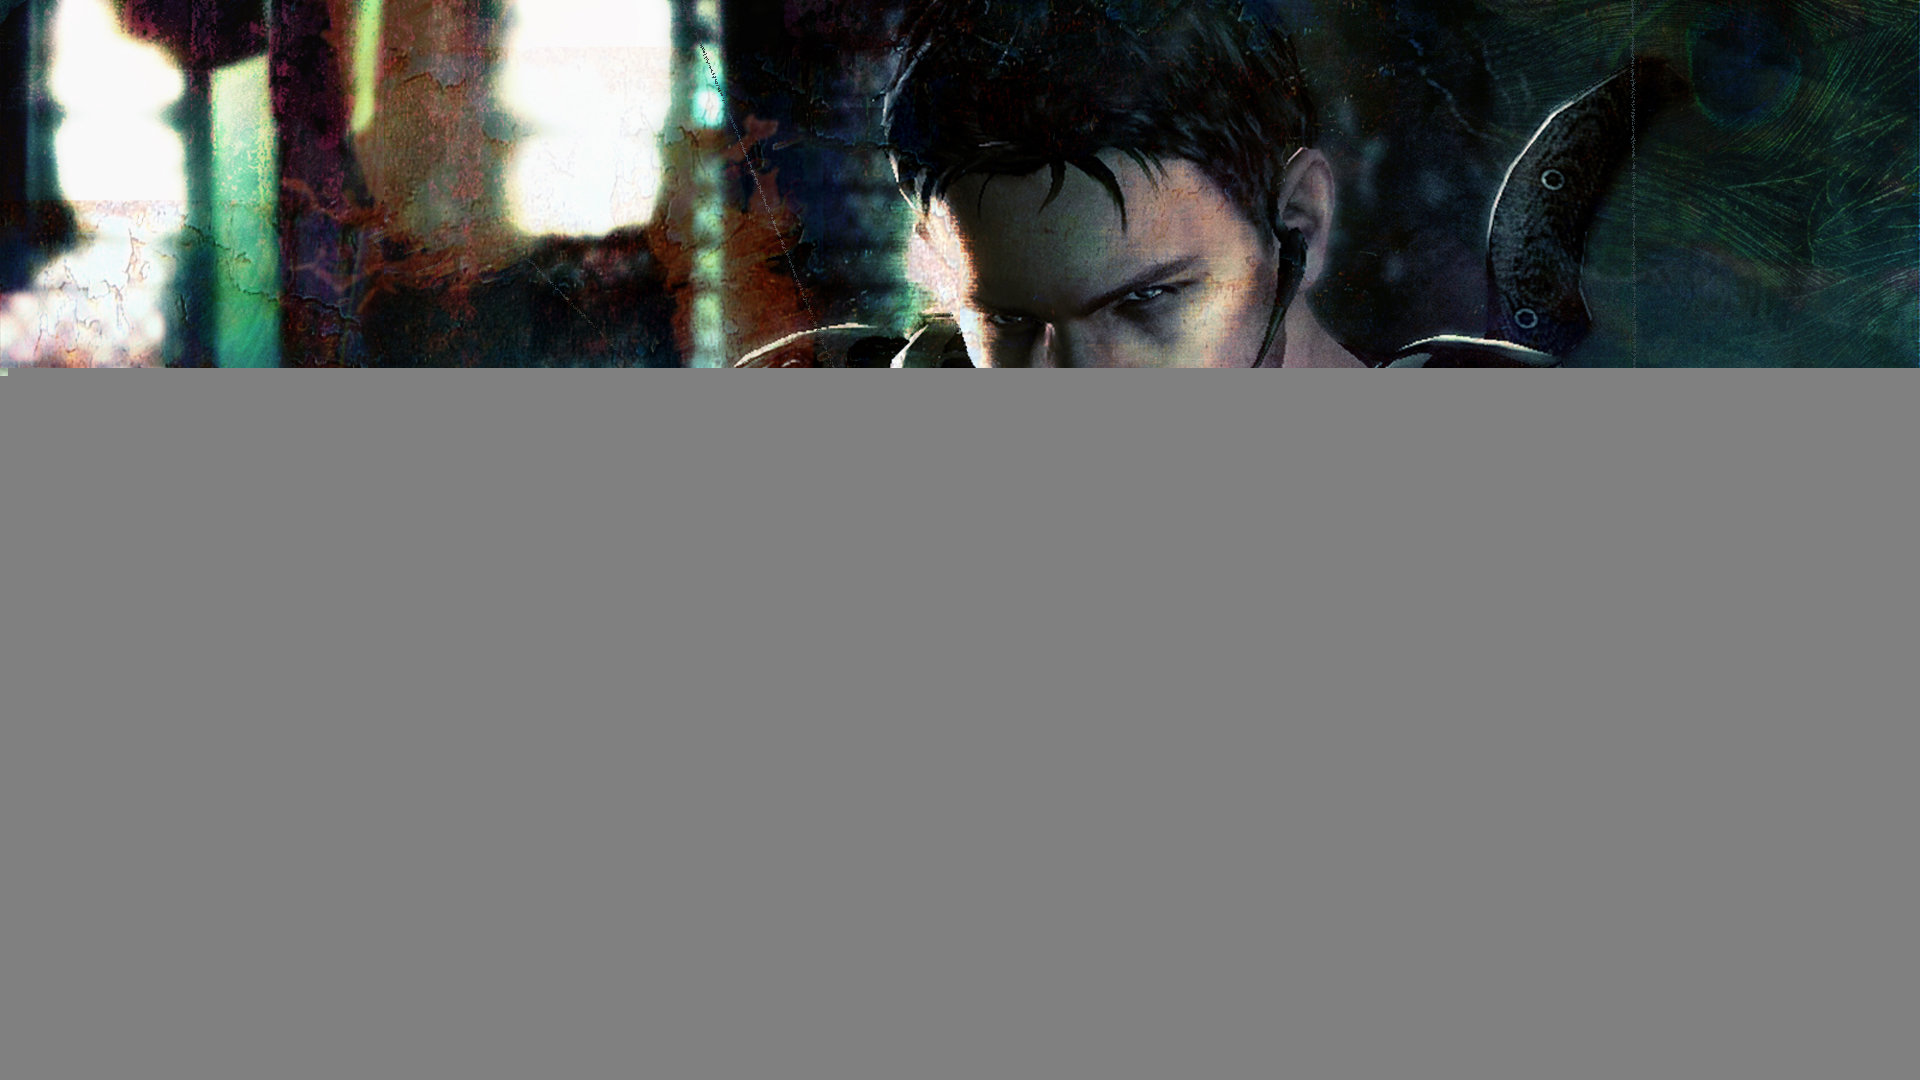 Best Resident Evil wallpaper ID:58268 for High Resolution full hd 1080p desktop